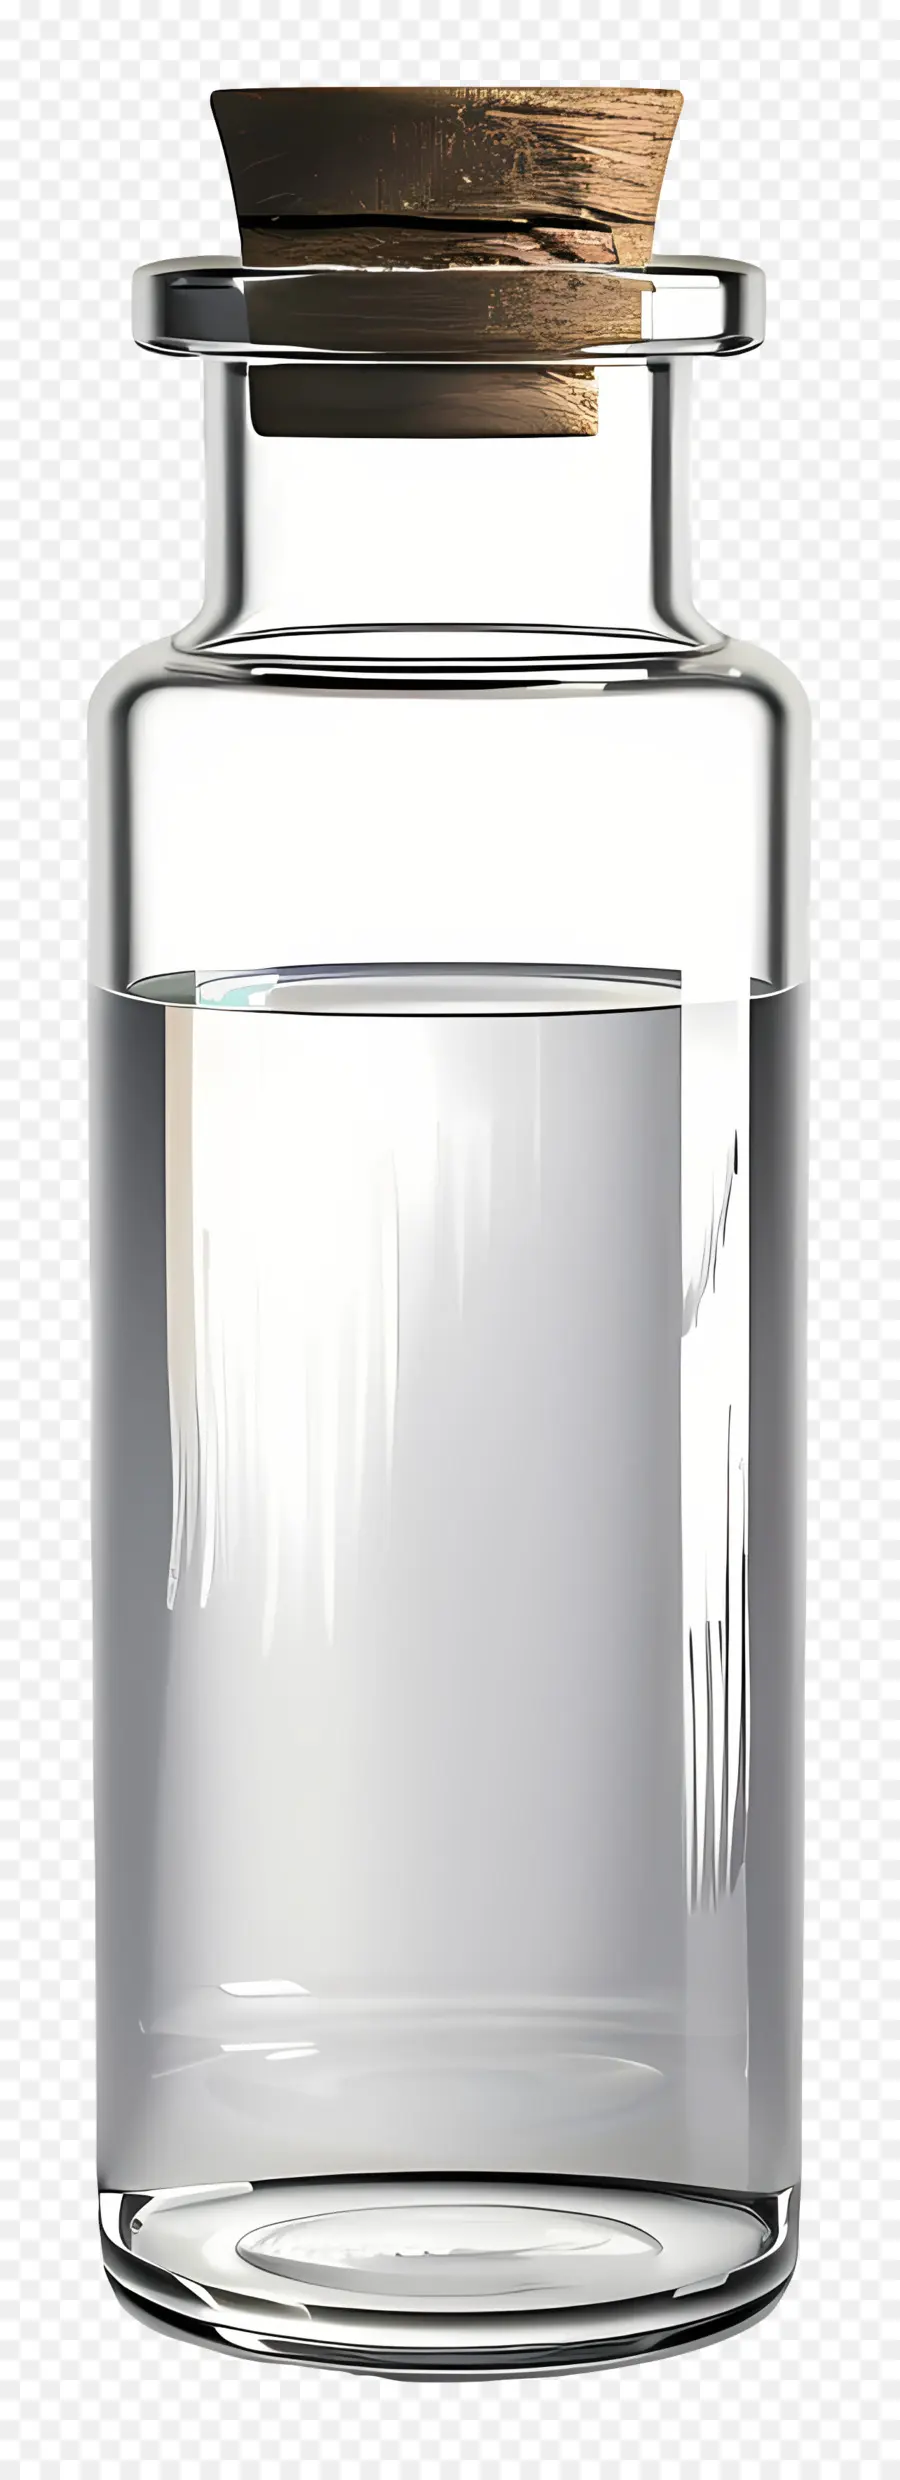 Glasfläschchen klarer Glasbehälter Wasser durchscheinend noch flüssig - Klarer Glasbehälter mit stillem Wasser gefüllt